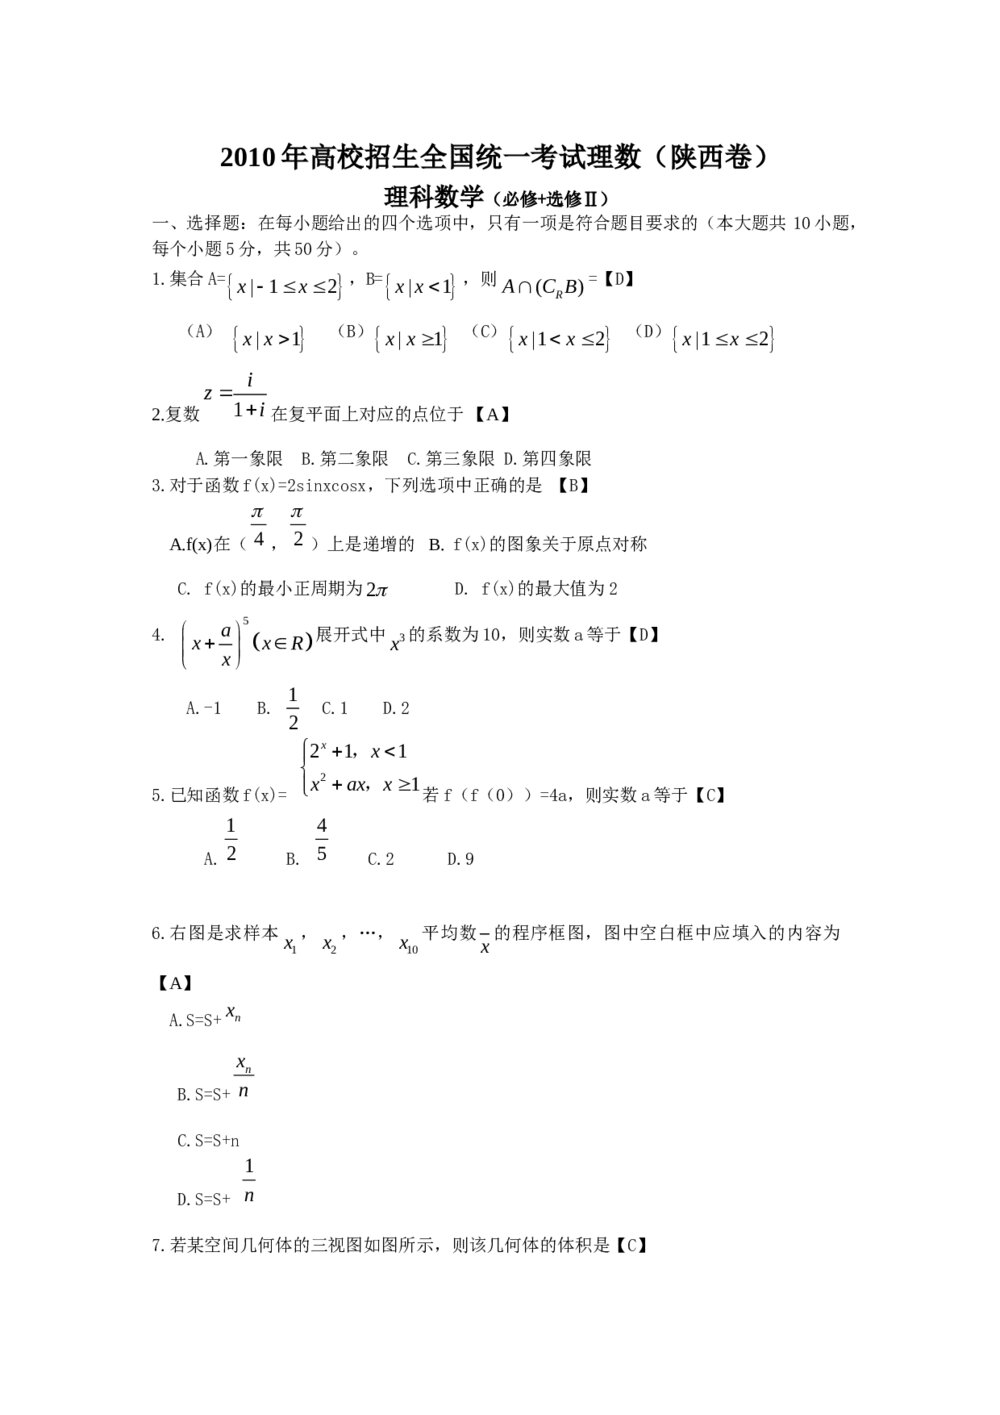 高考试题(陕西卷)--数学理科解析版1